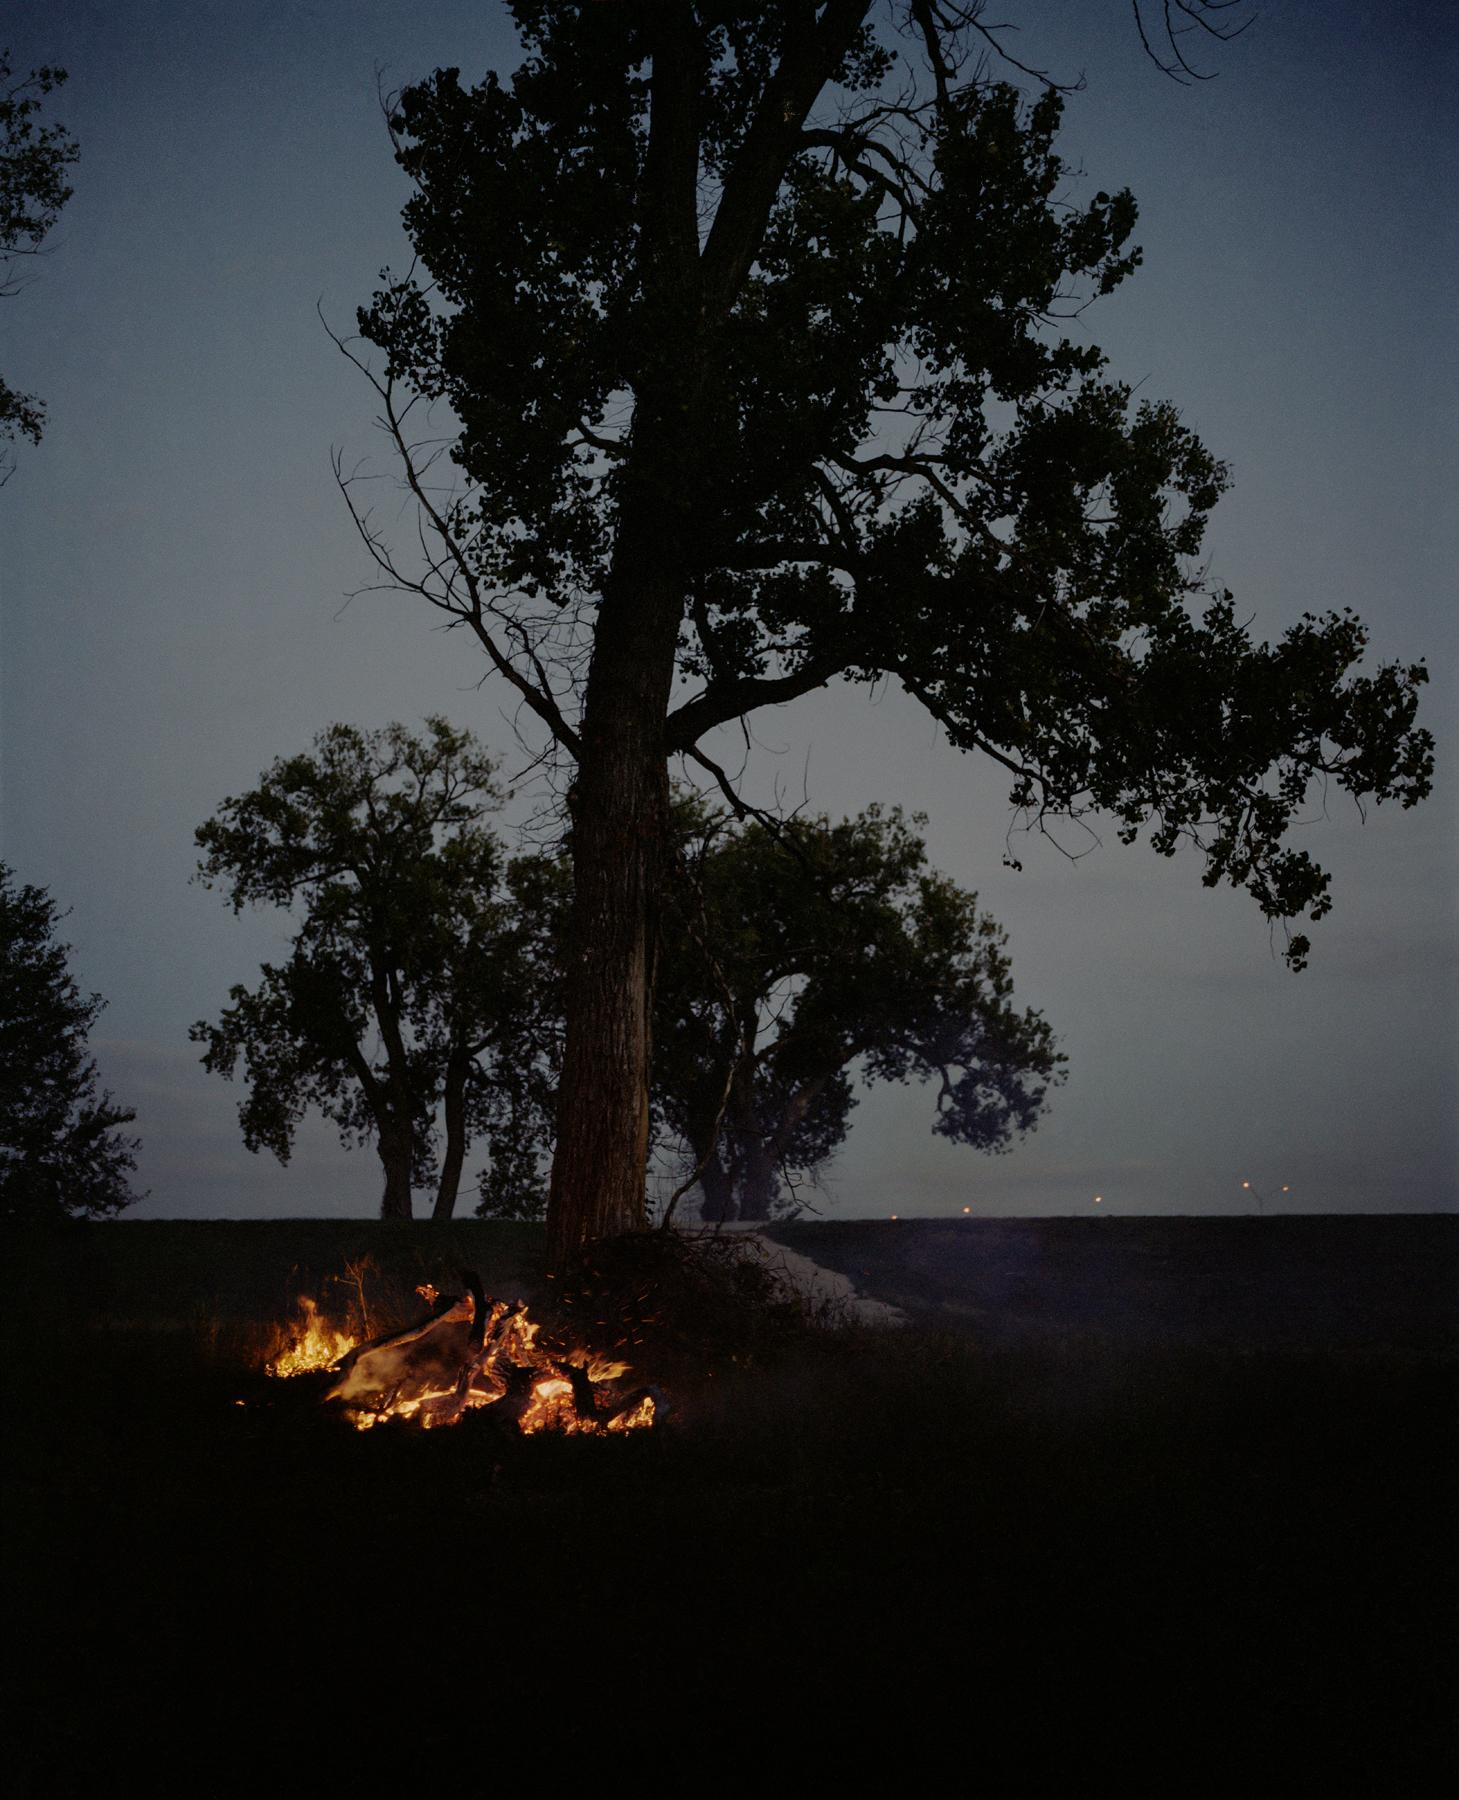 Gregory Halpern Color Photograph – Omaha Skizzenbuch: Feuer und Baum, Omaha, NE - Zeitgenössische Fotografie